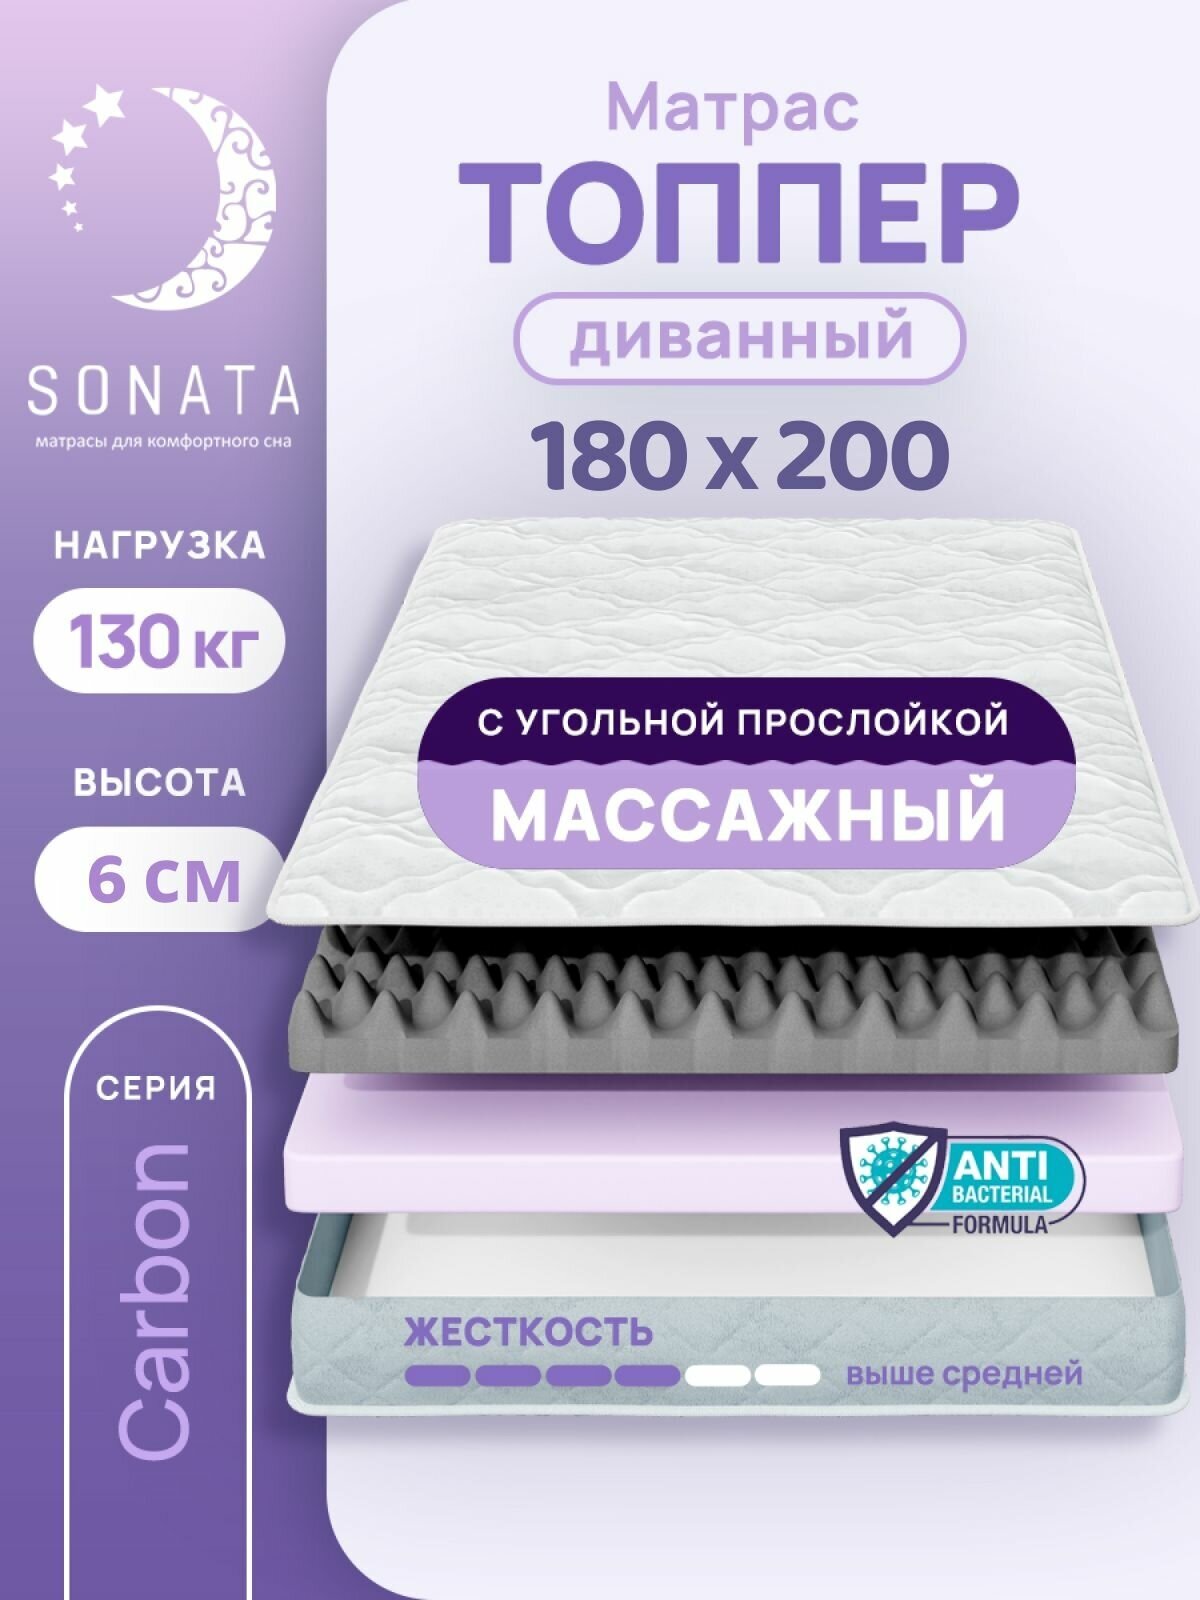 Топпер матрас 180х200 см SONATA, ортопедический, беспружинный, двуспальный, тонкий матрац для дивана, кровати, высота 6 см с массажным эффектом